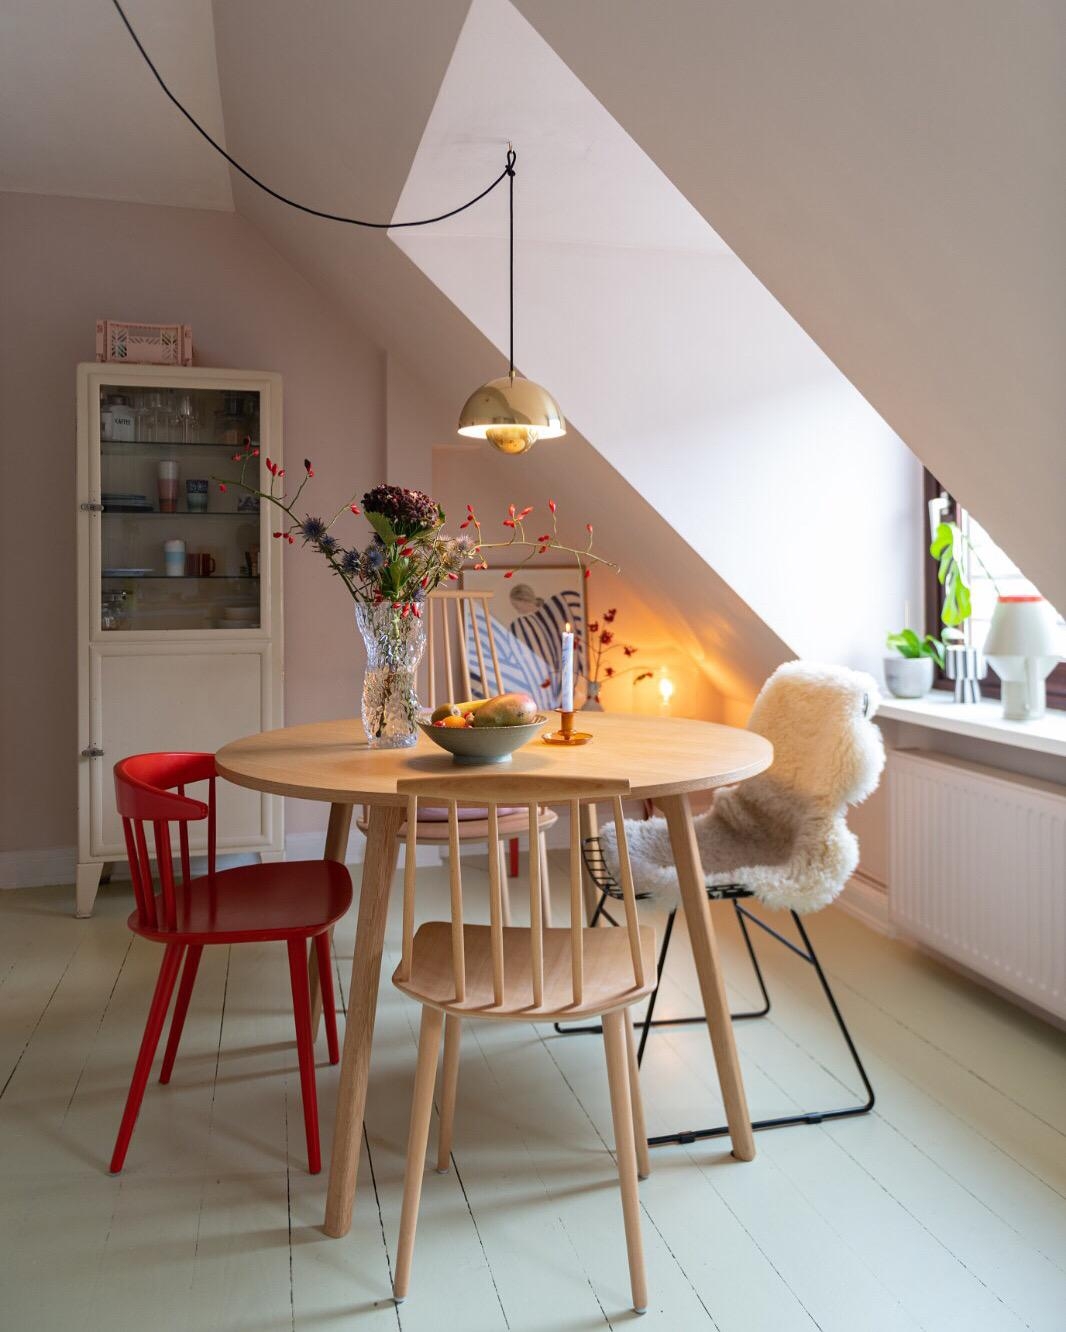 Unsere gemütliche Wohnküche in Hamburg ✨
#küche #scandi #pastell #hay